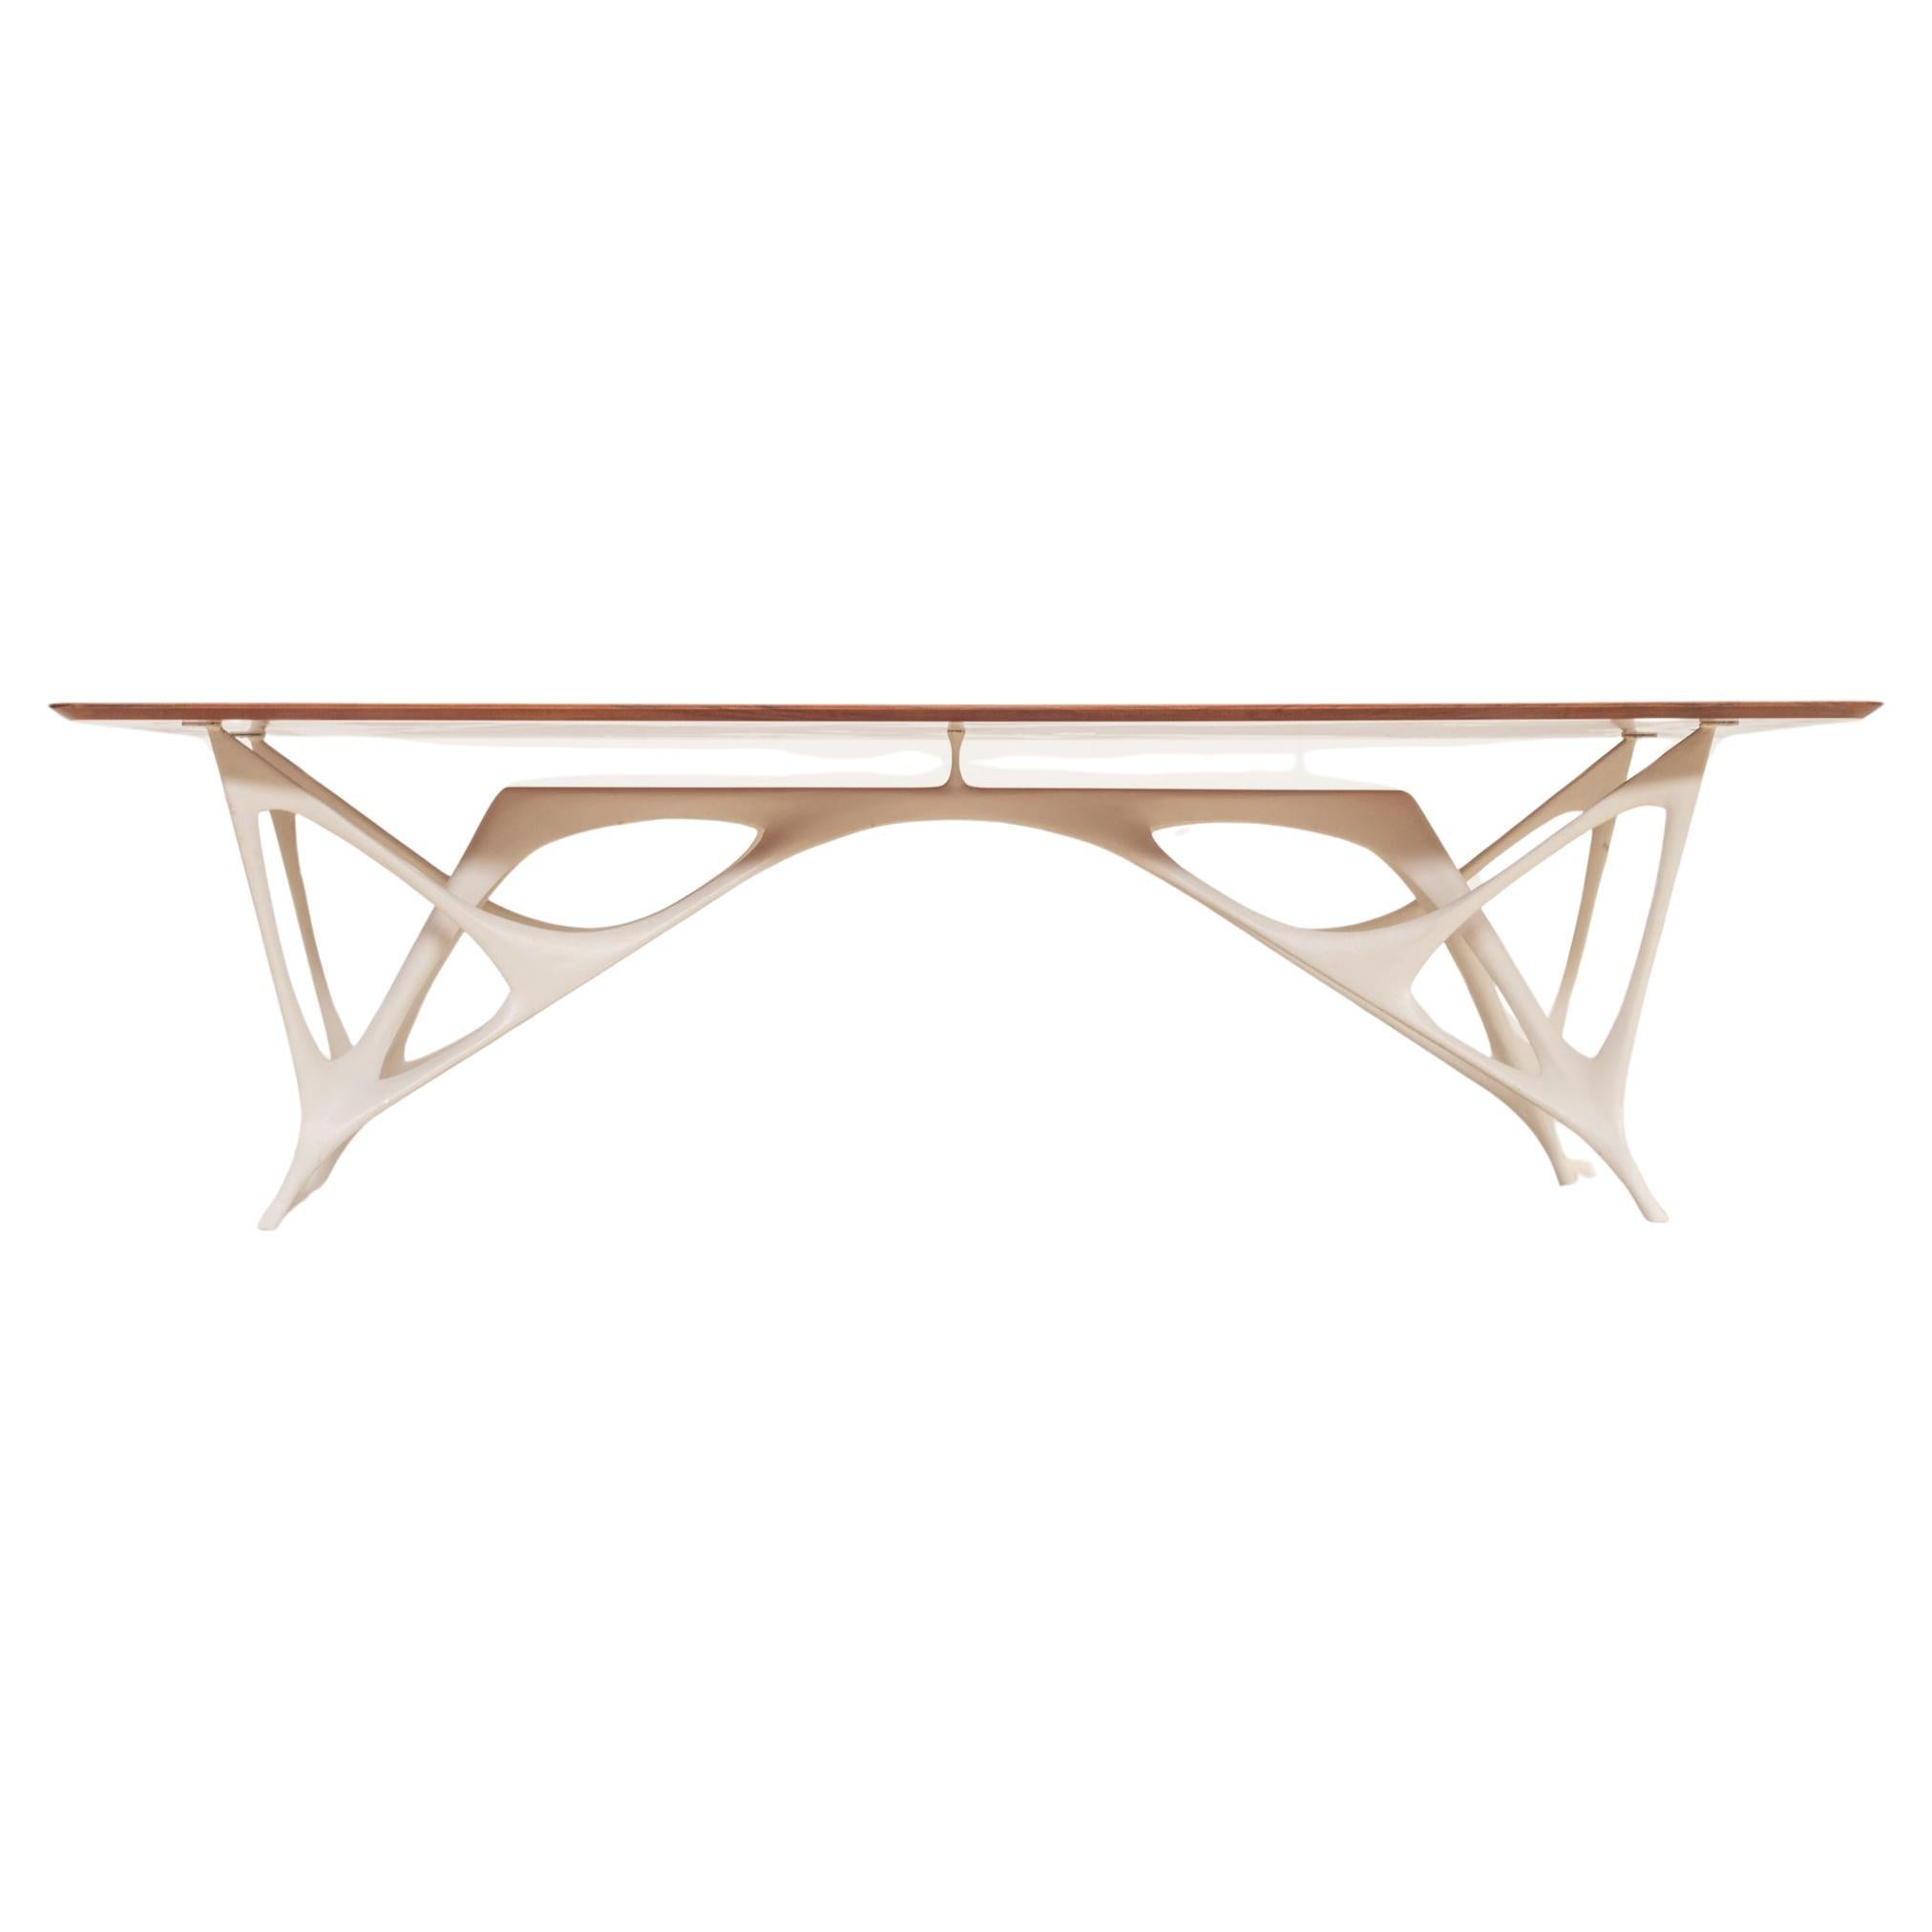 Architectural table by Le Opere e i Giorni studio For Sale